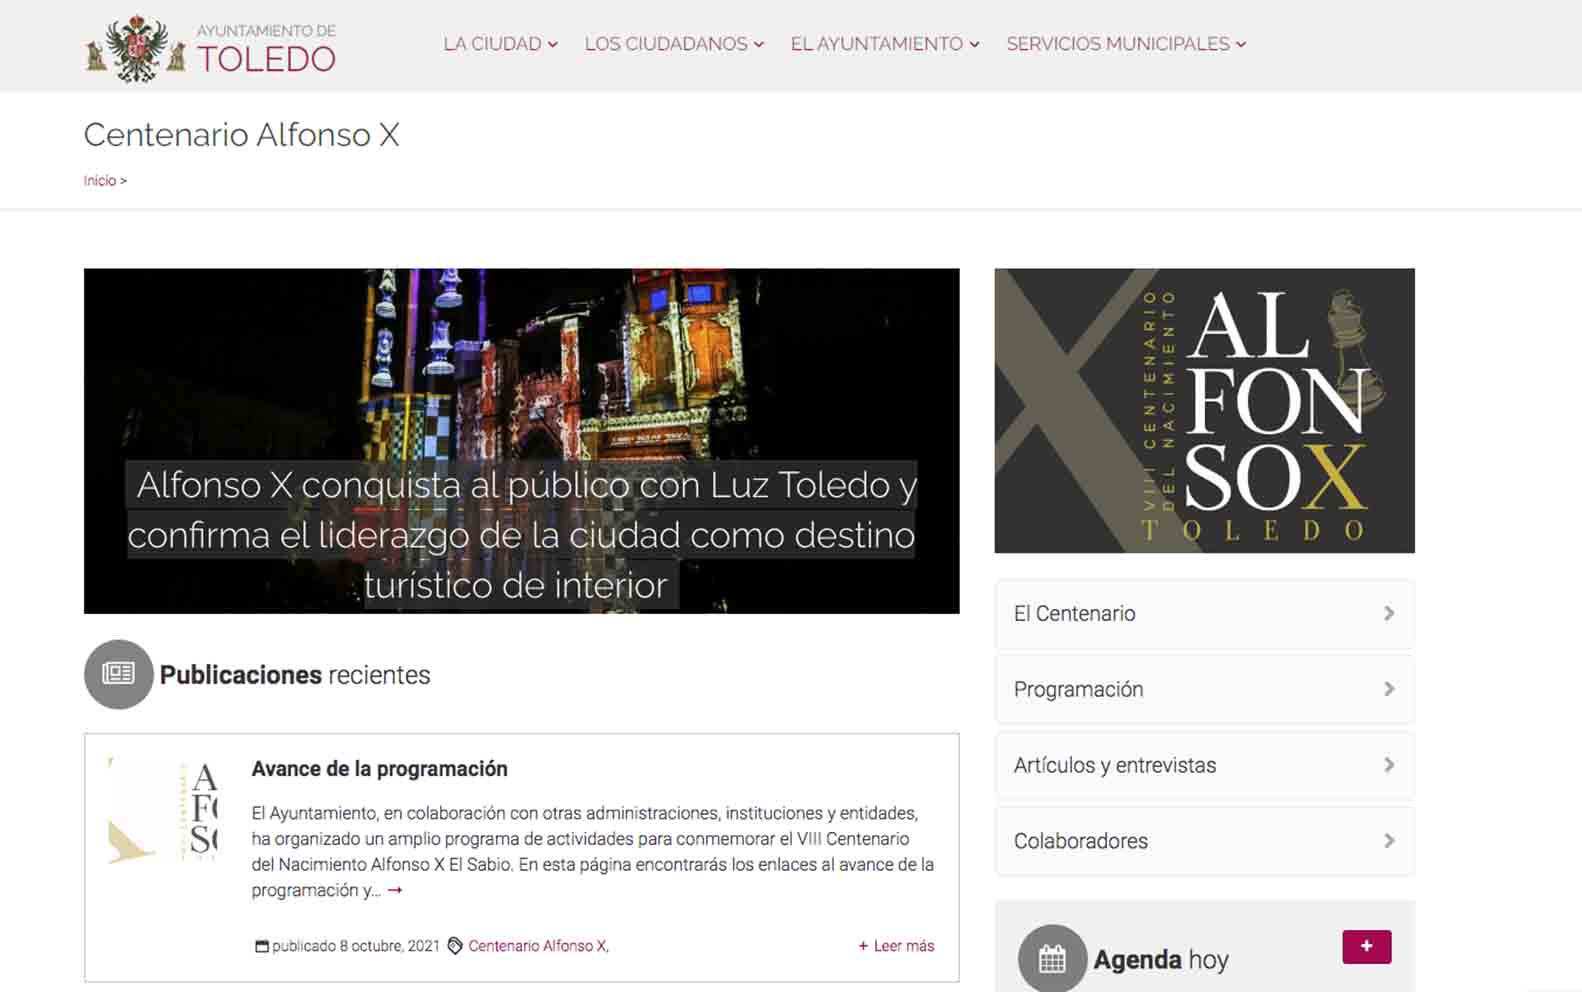 Imagen de la nueva web del centenario del nacimiento de Alfonso X el Sabio.